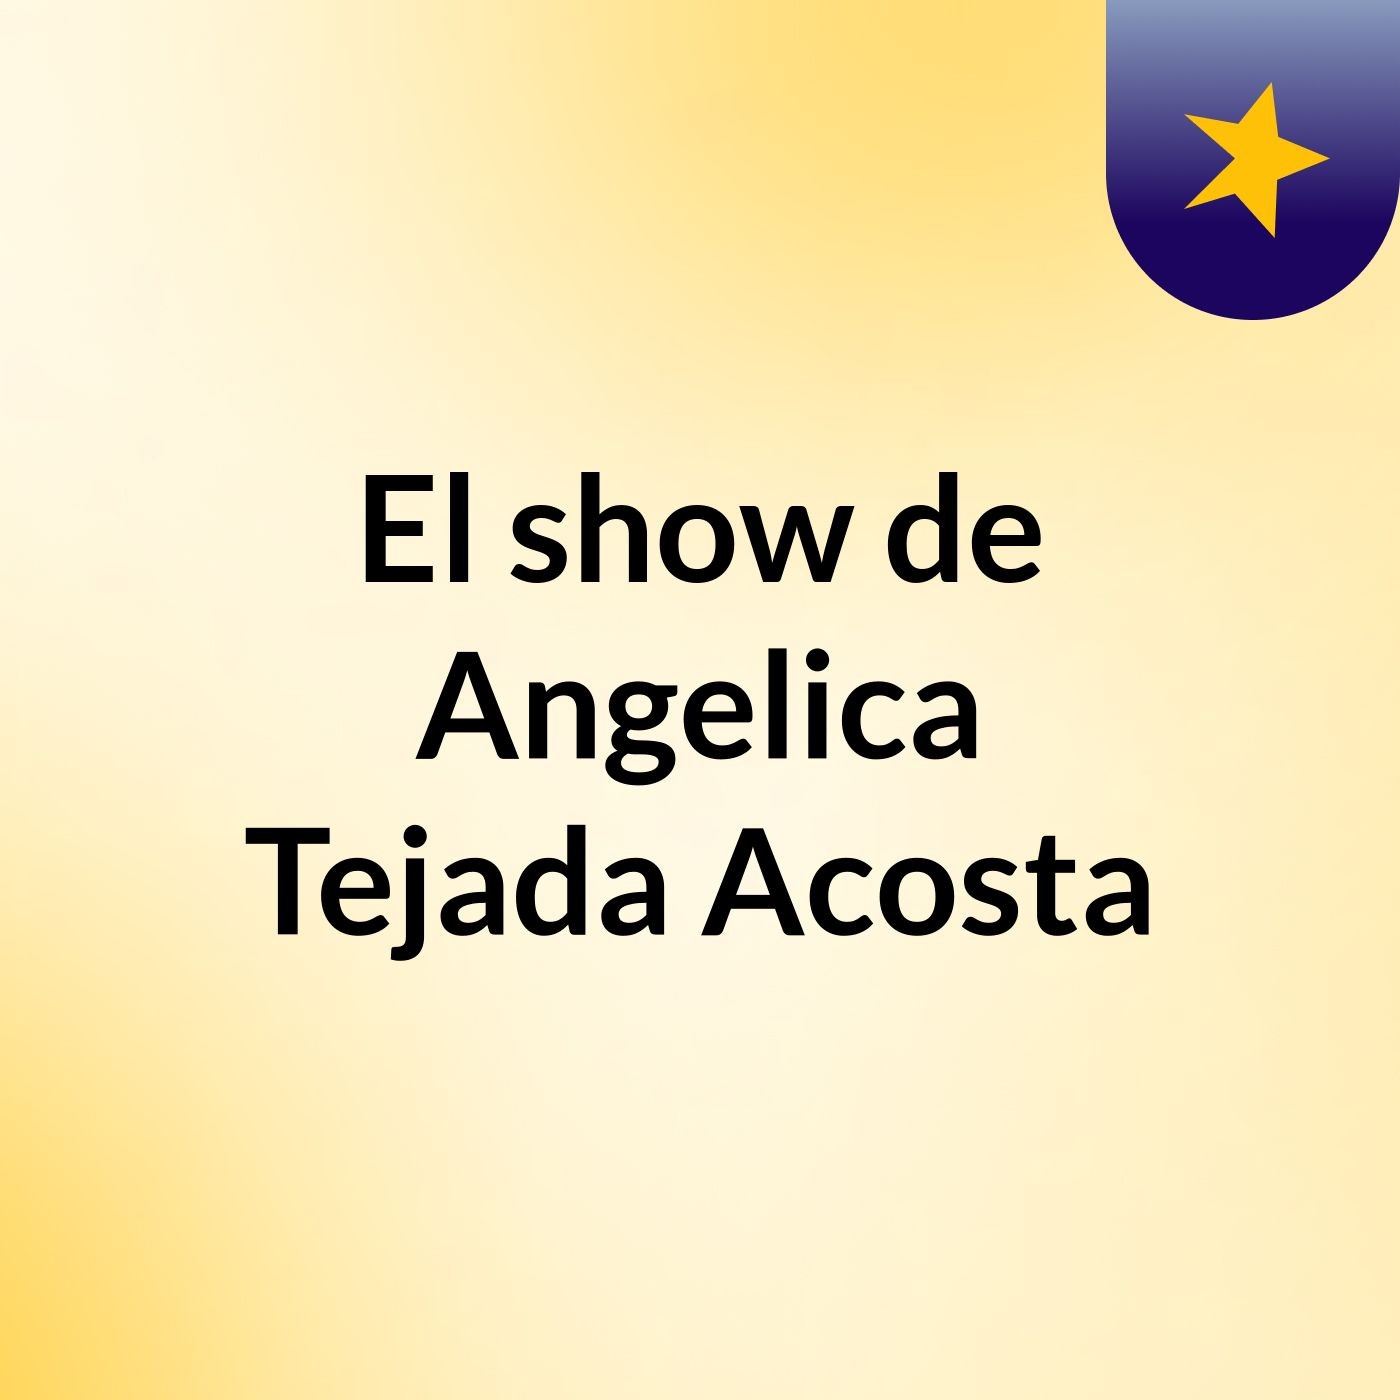 El show de Angelica Tejada Acosta